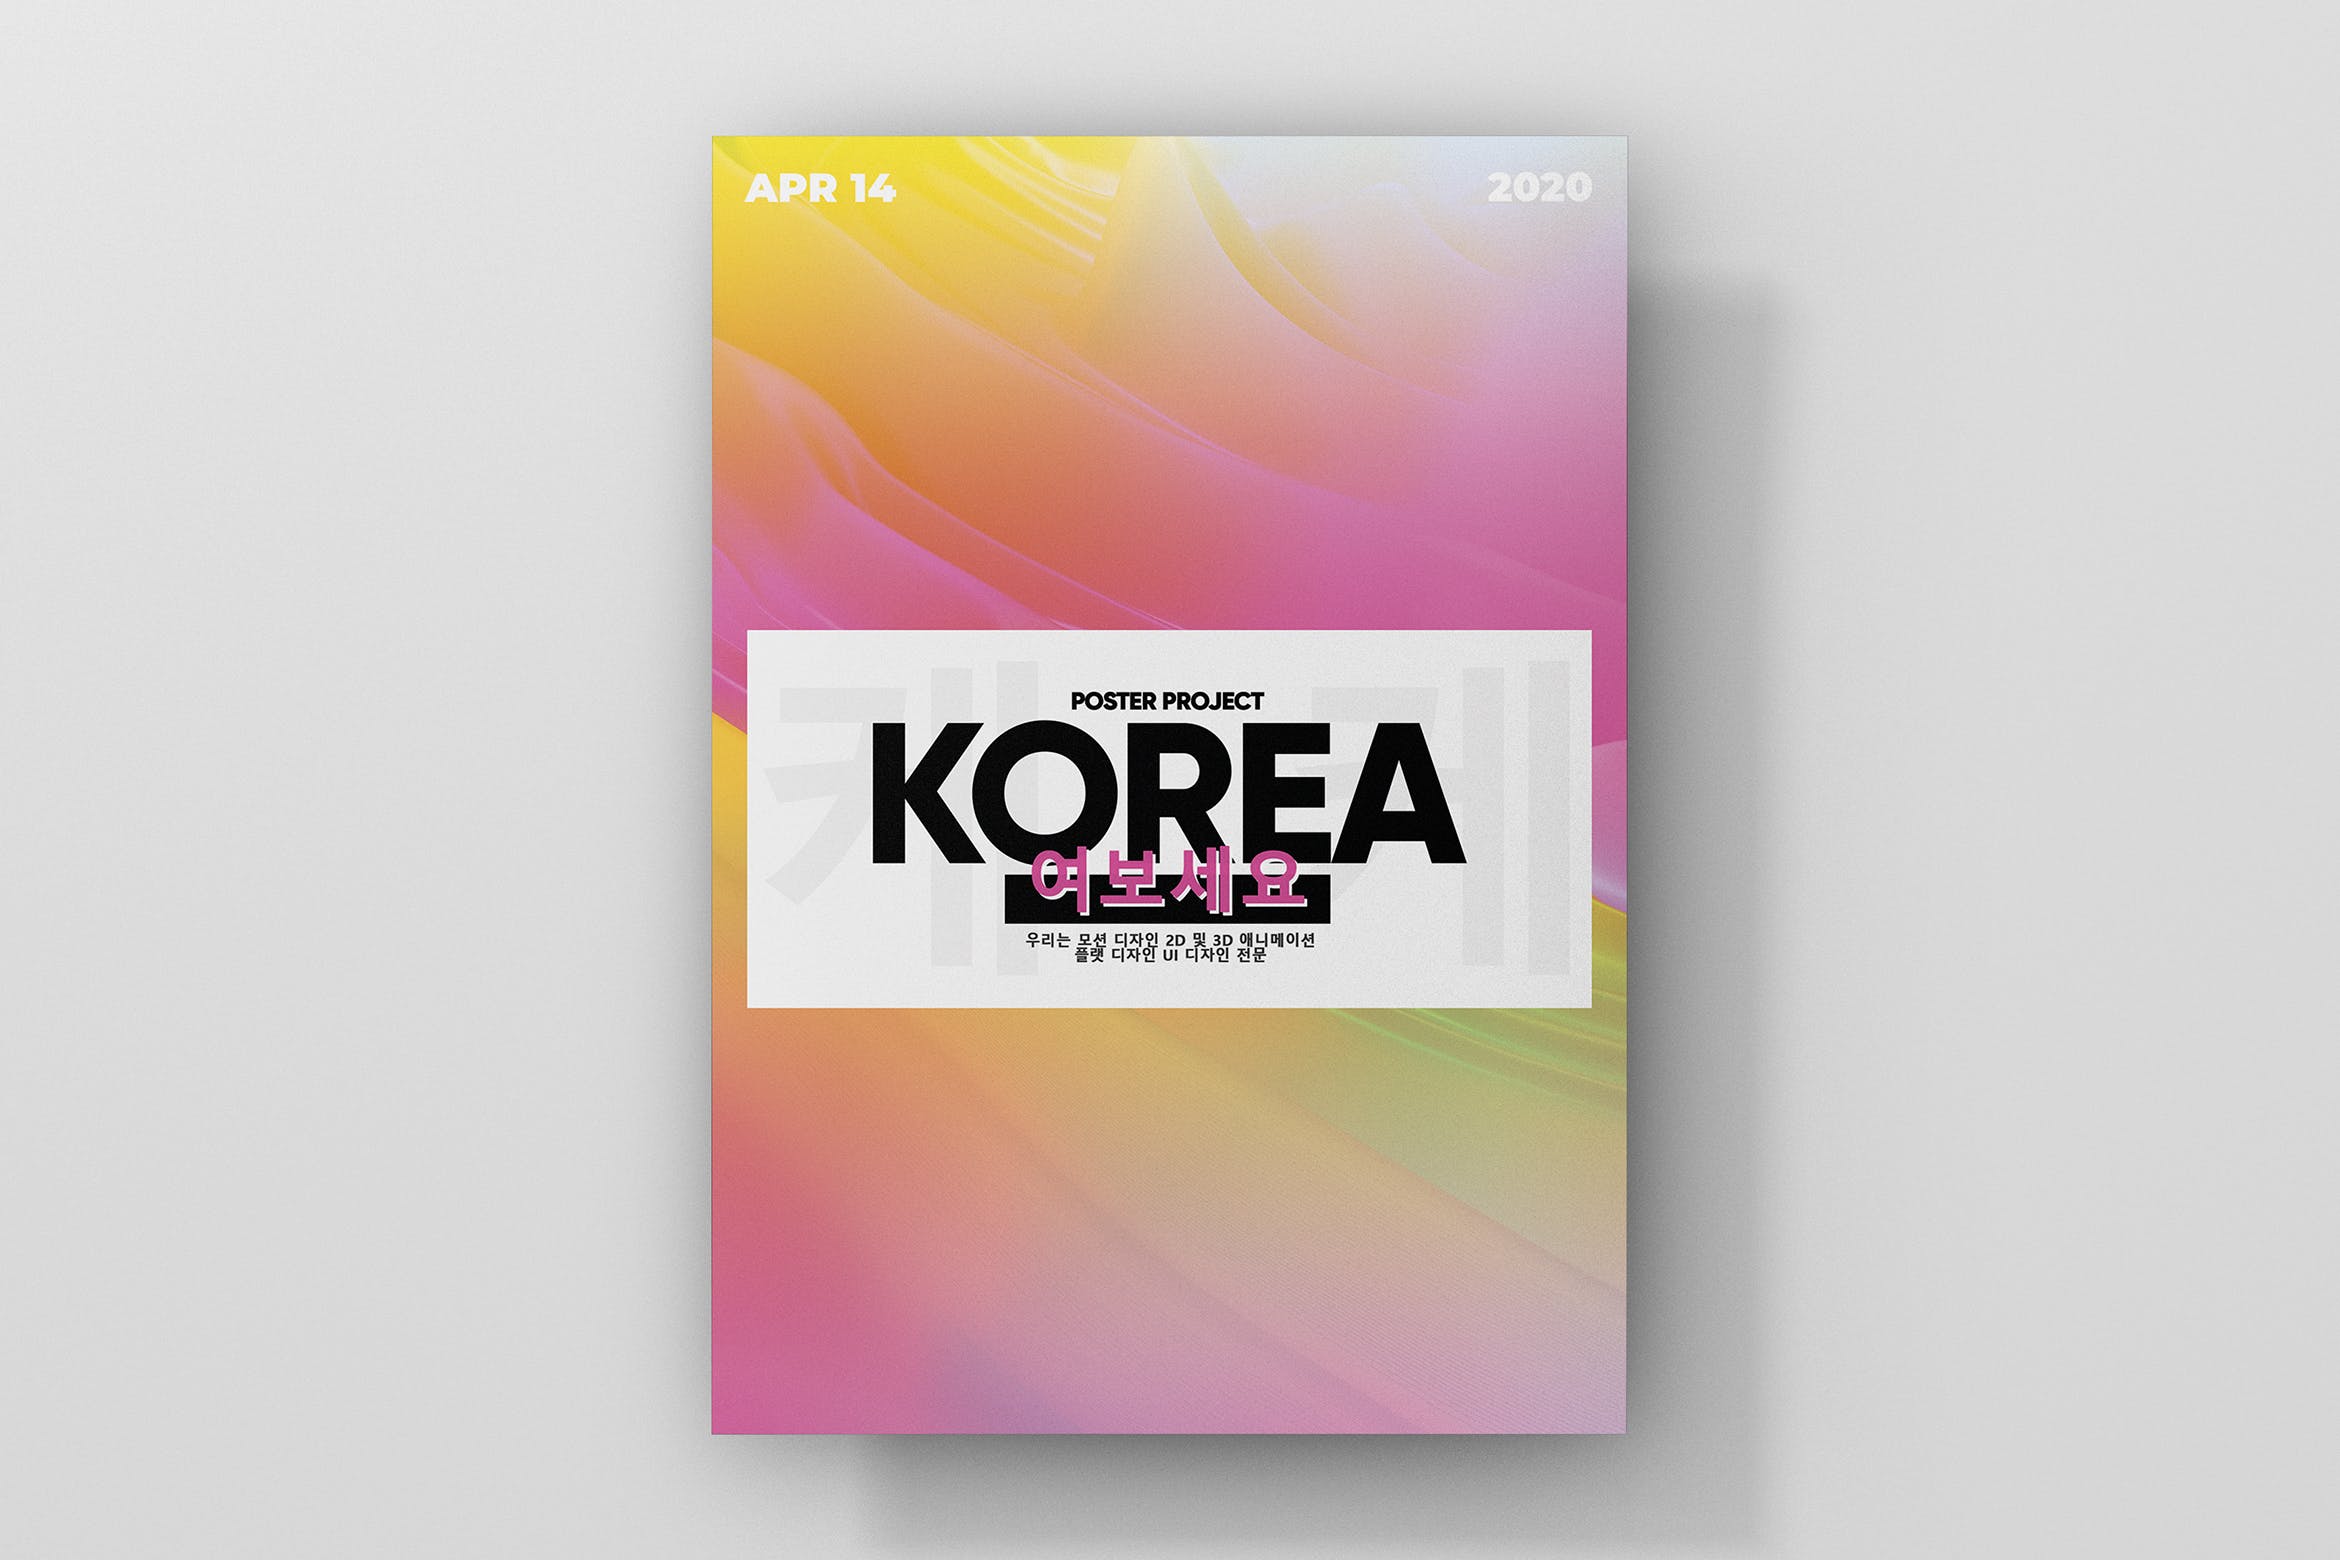 极简设计风格渐变色海报设计模板素材 Korea Gradient Poster插图